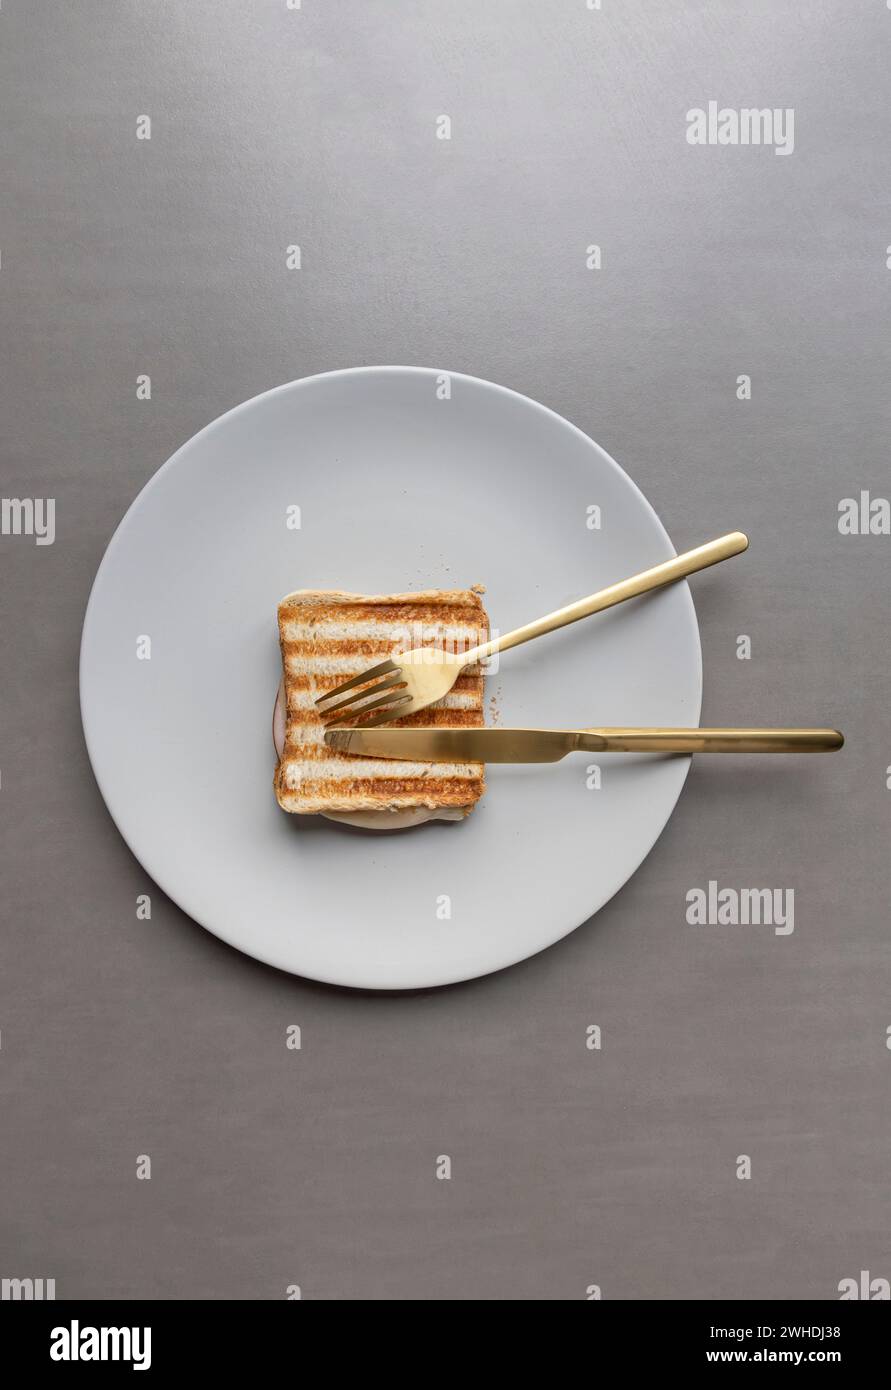 Un panino con toast al prosciutto grigliato a strisce si trova su un piatto grigio chiaro su sfondo grigio Foto Stock